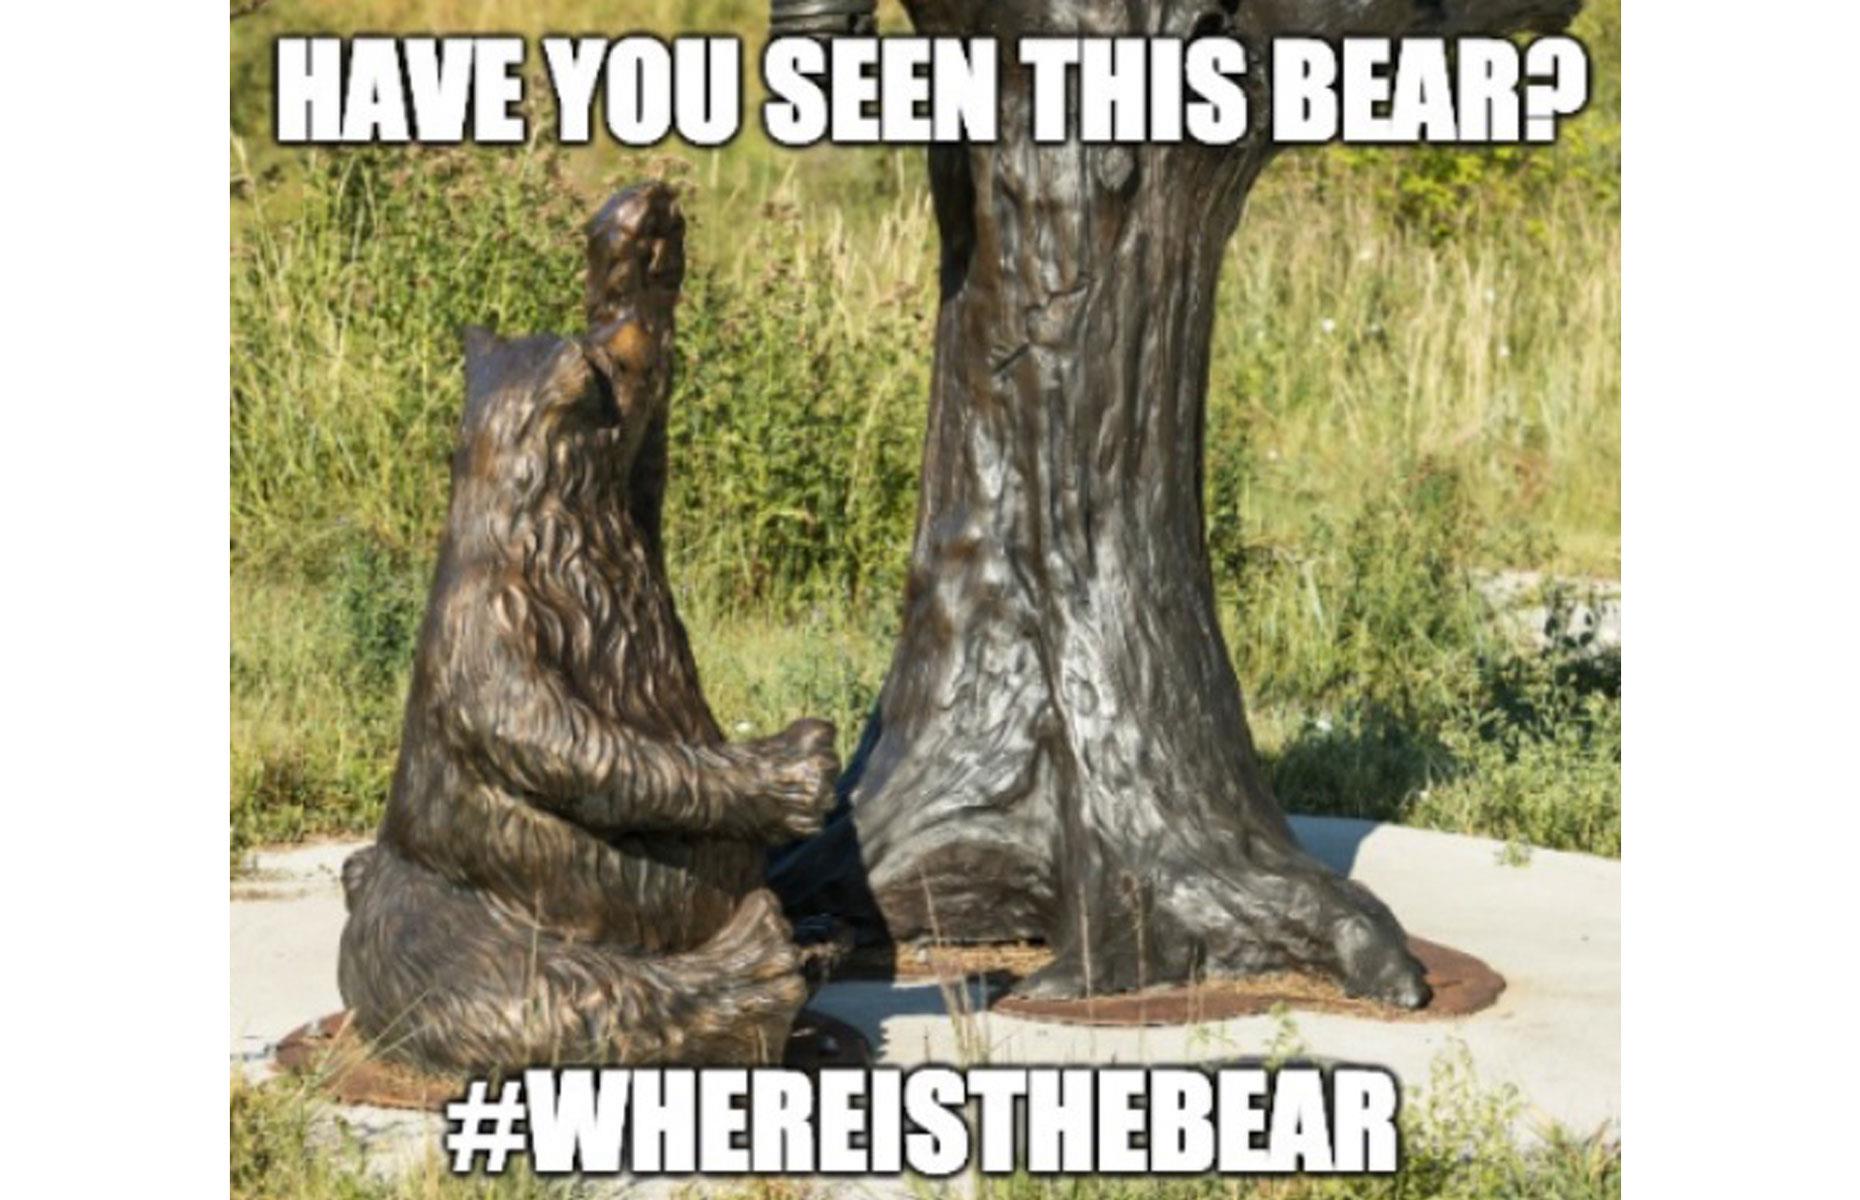 The bronze bear sculpture worth $21,000 (£16.3k)